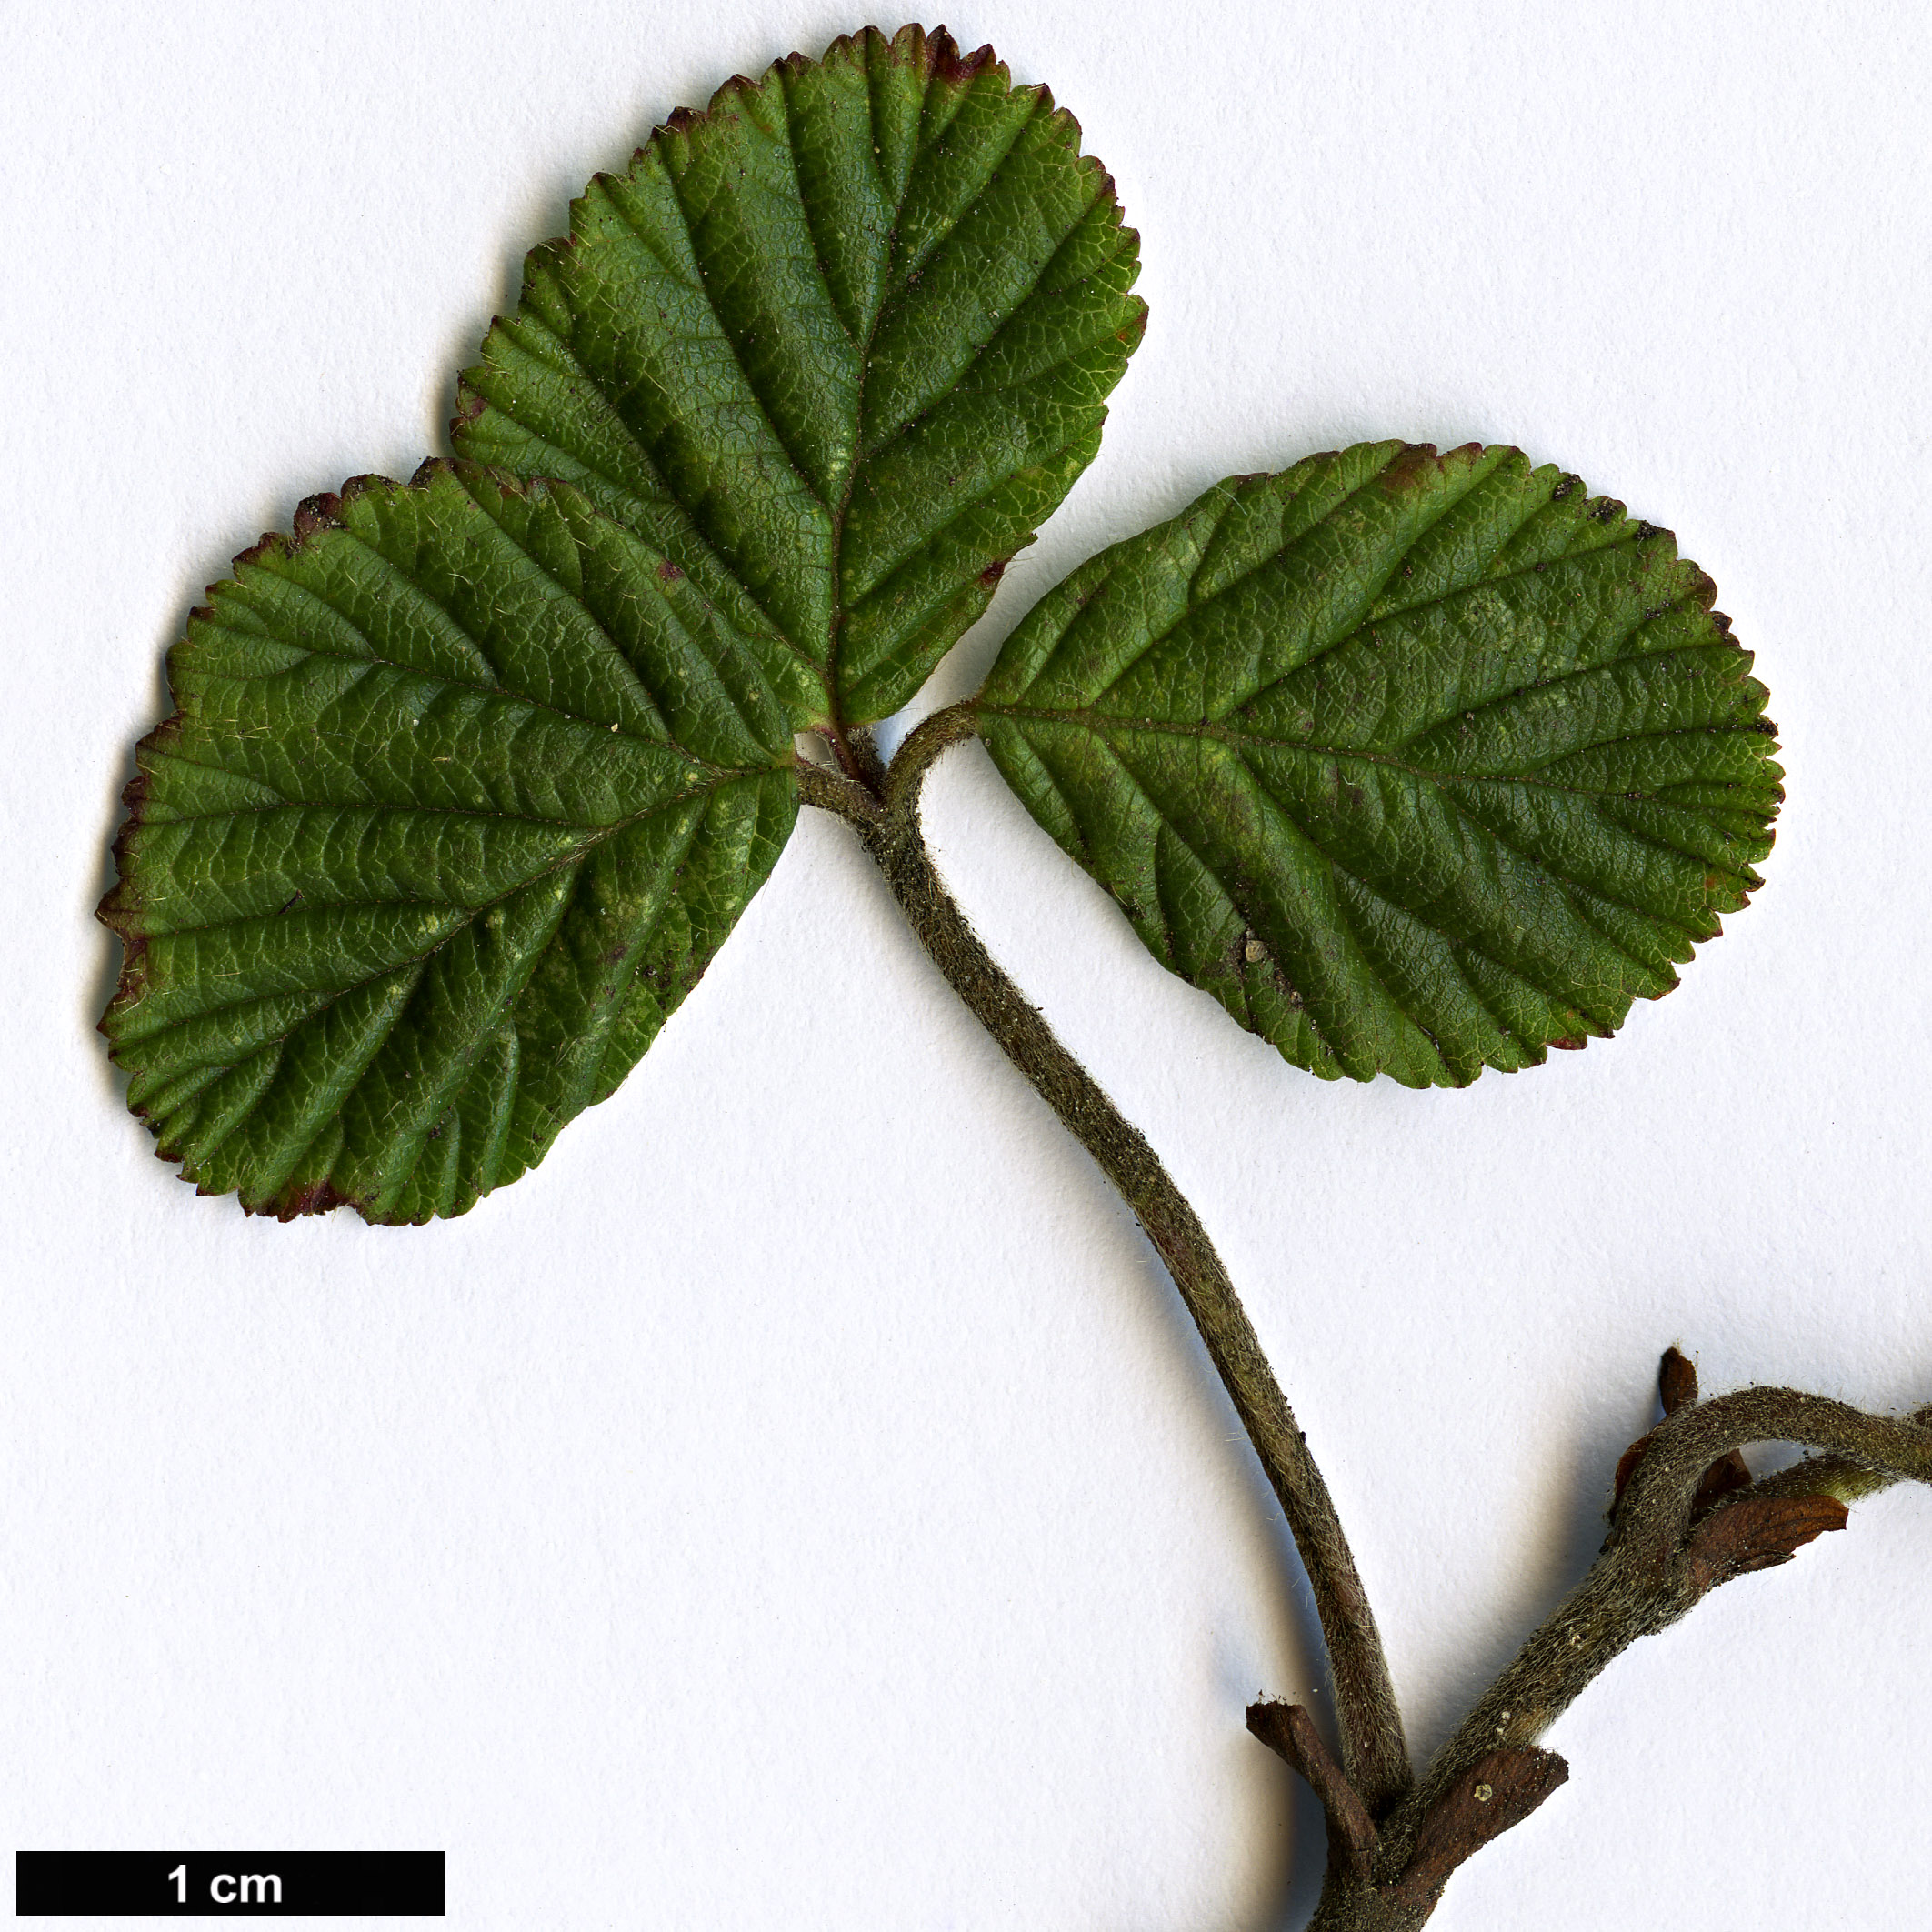 High resolution image: Family: Rosaceae - Genus: Rubus - Taxon: fockeanus